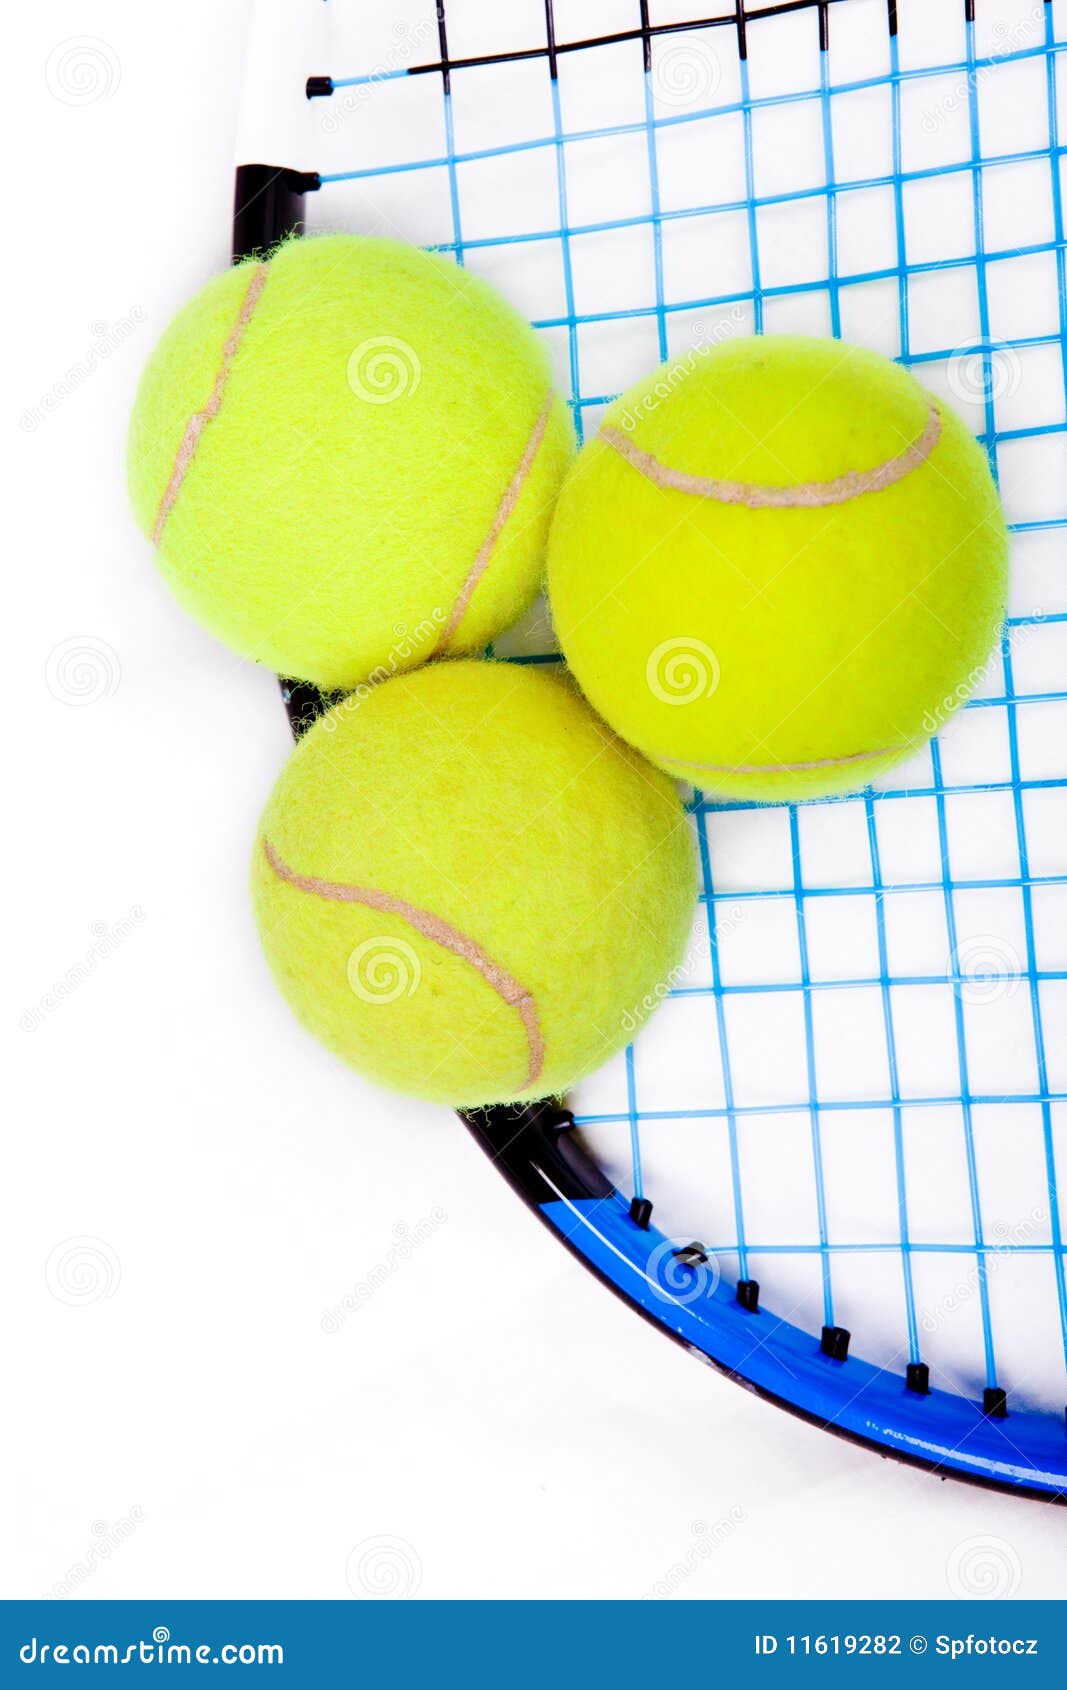 tennis raquet with a tennis balls